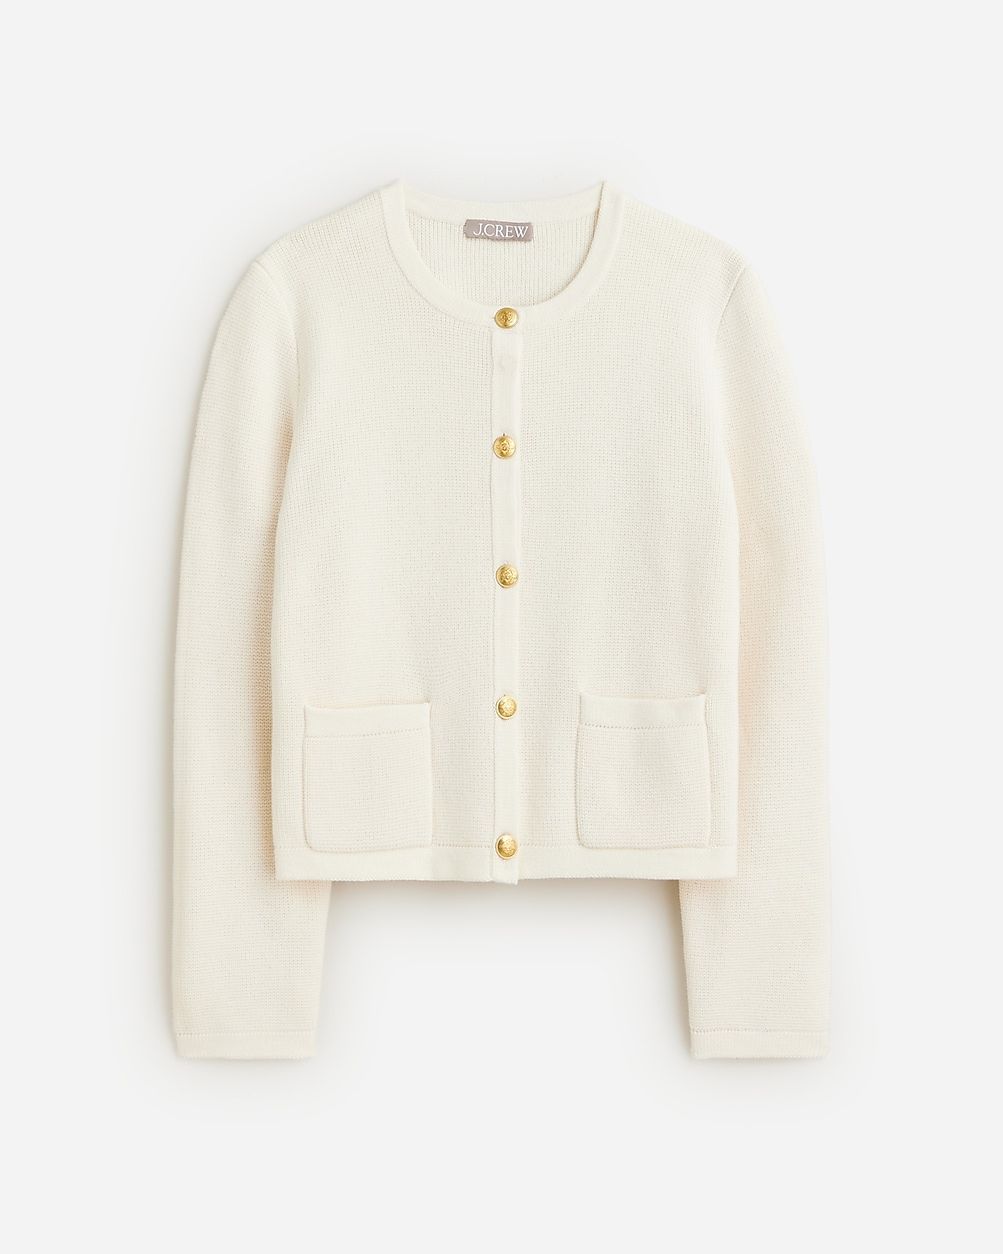 Emilie sweater lady jacket | J.Crew US